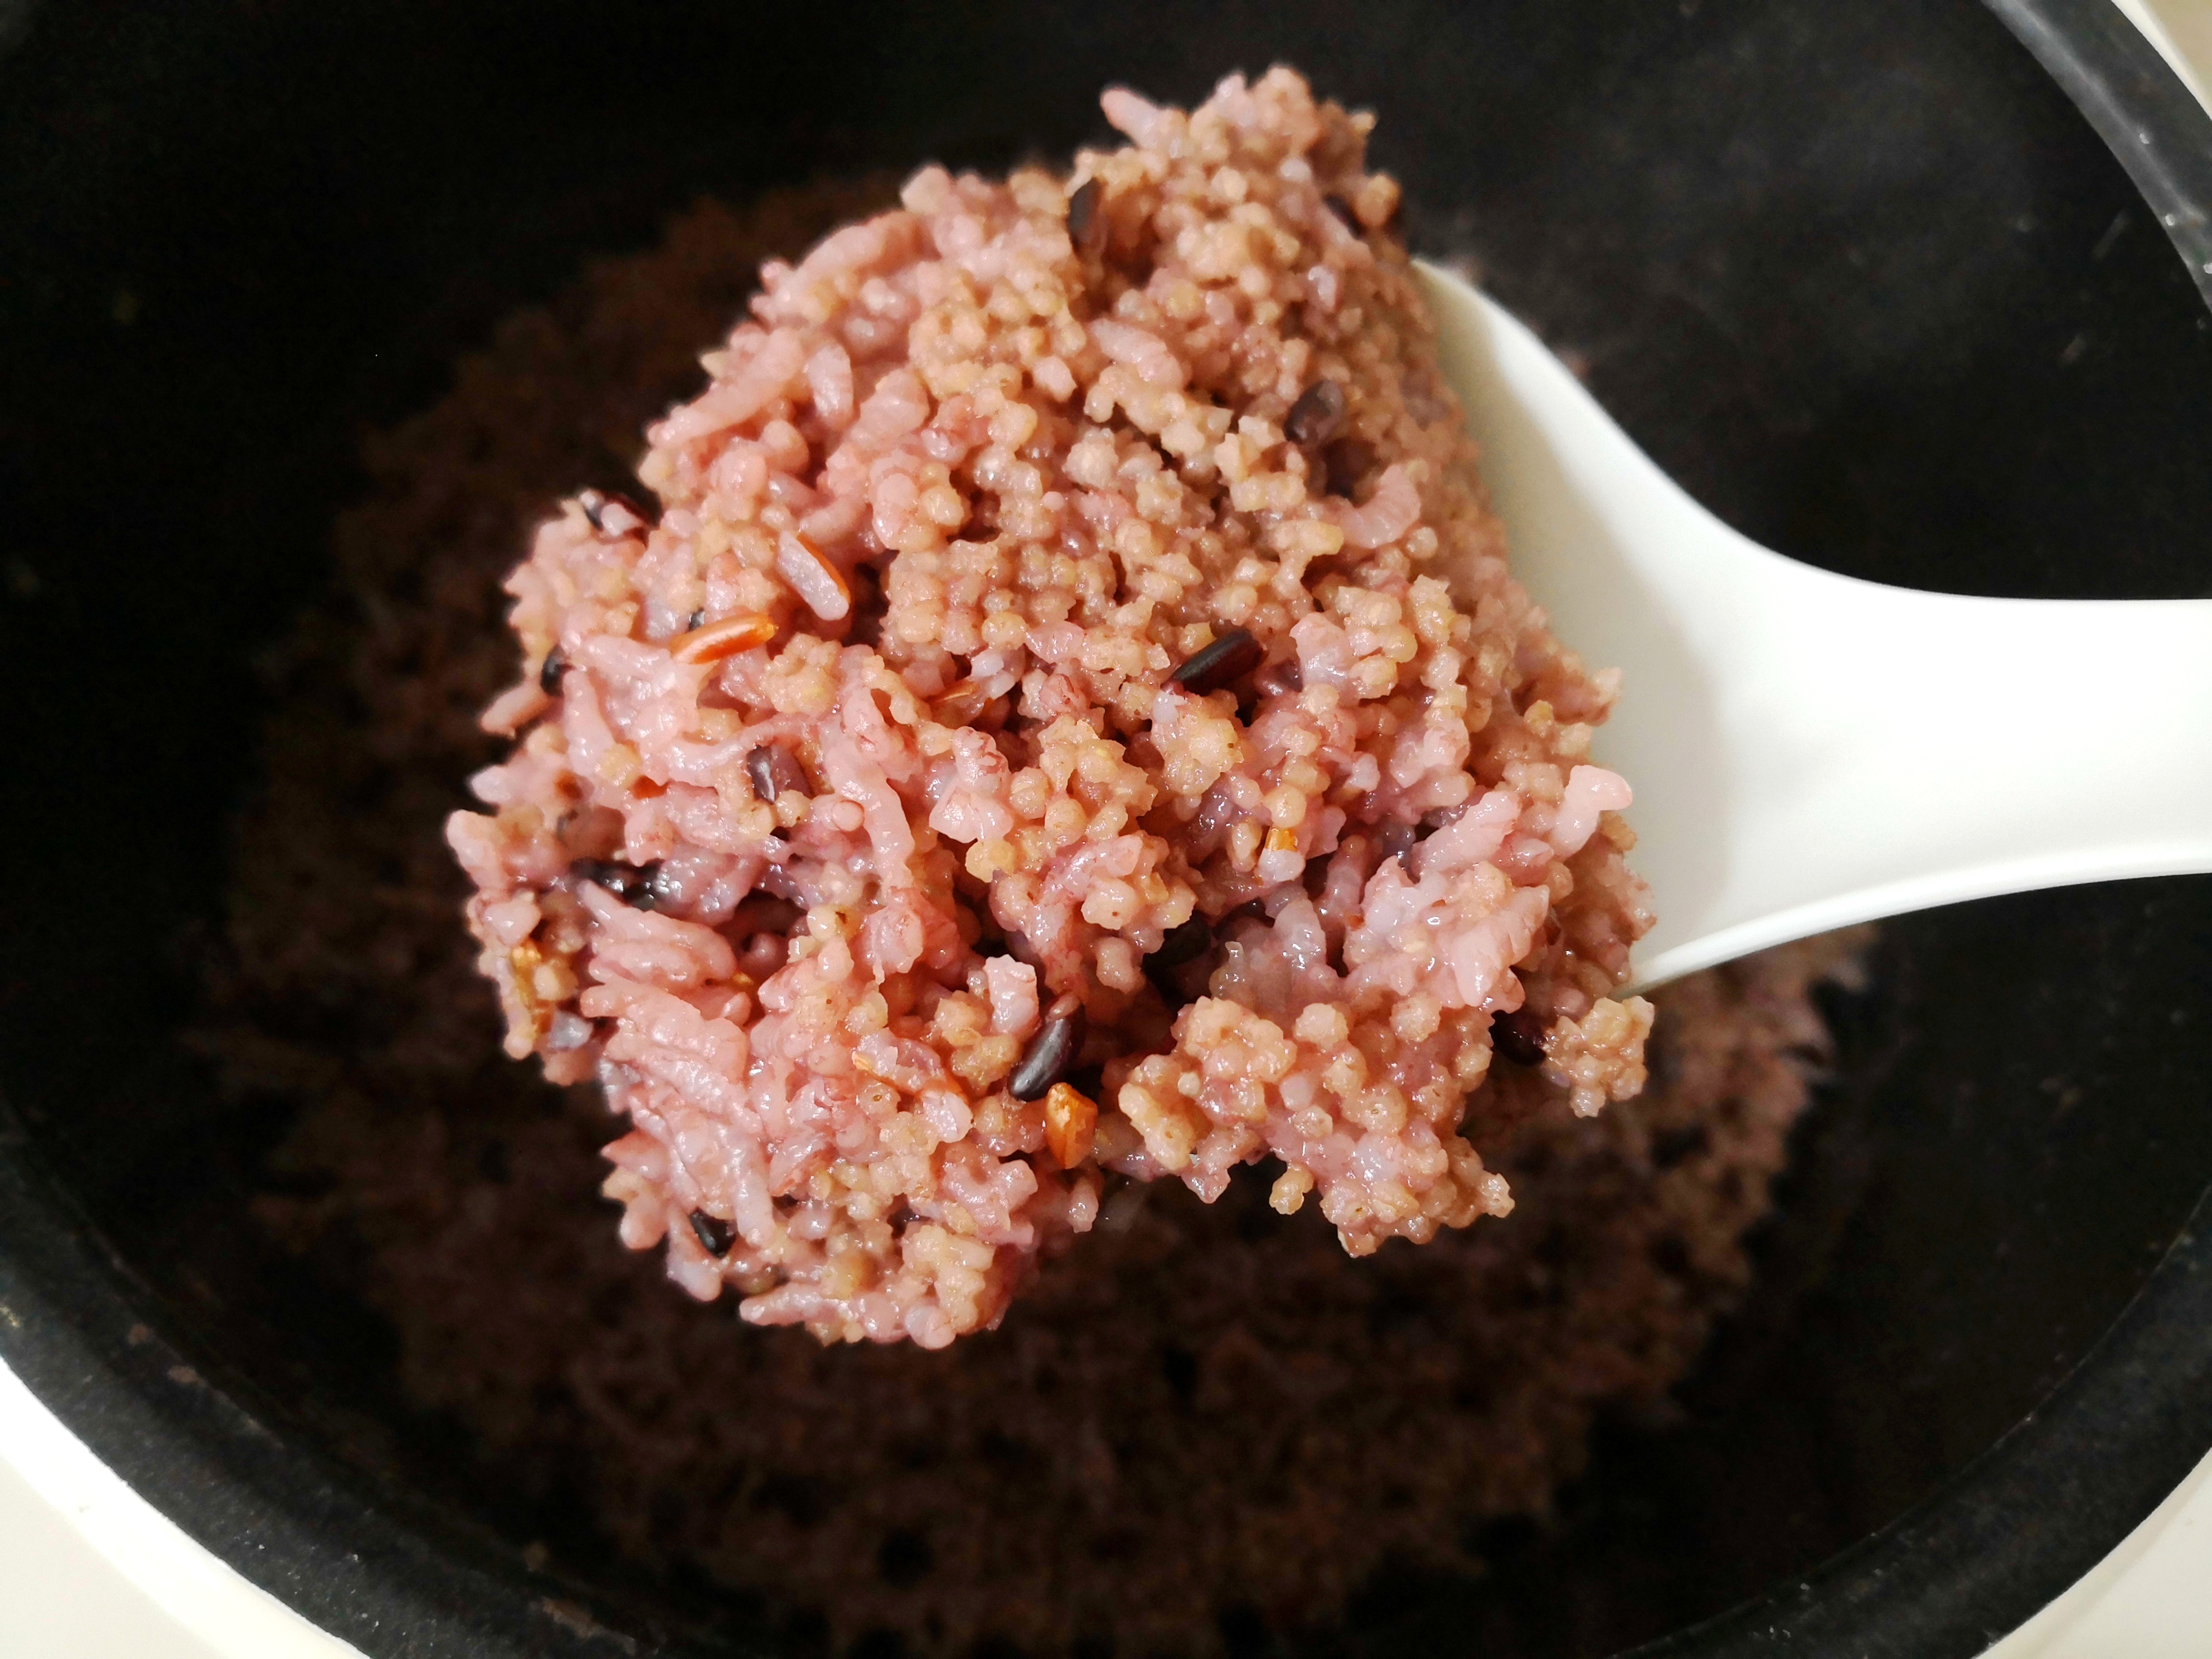 晚上煮的四米饭——红米,黑米,大米,小米,粗细搭配,保证口感的同时